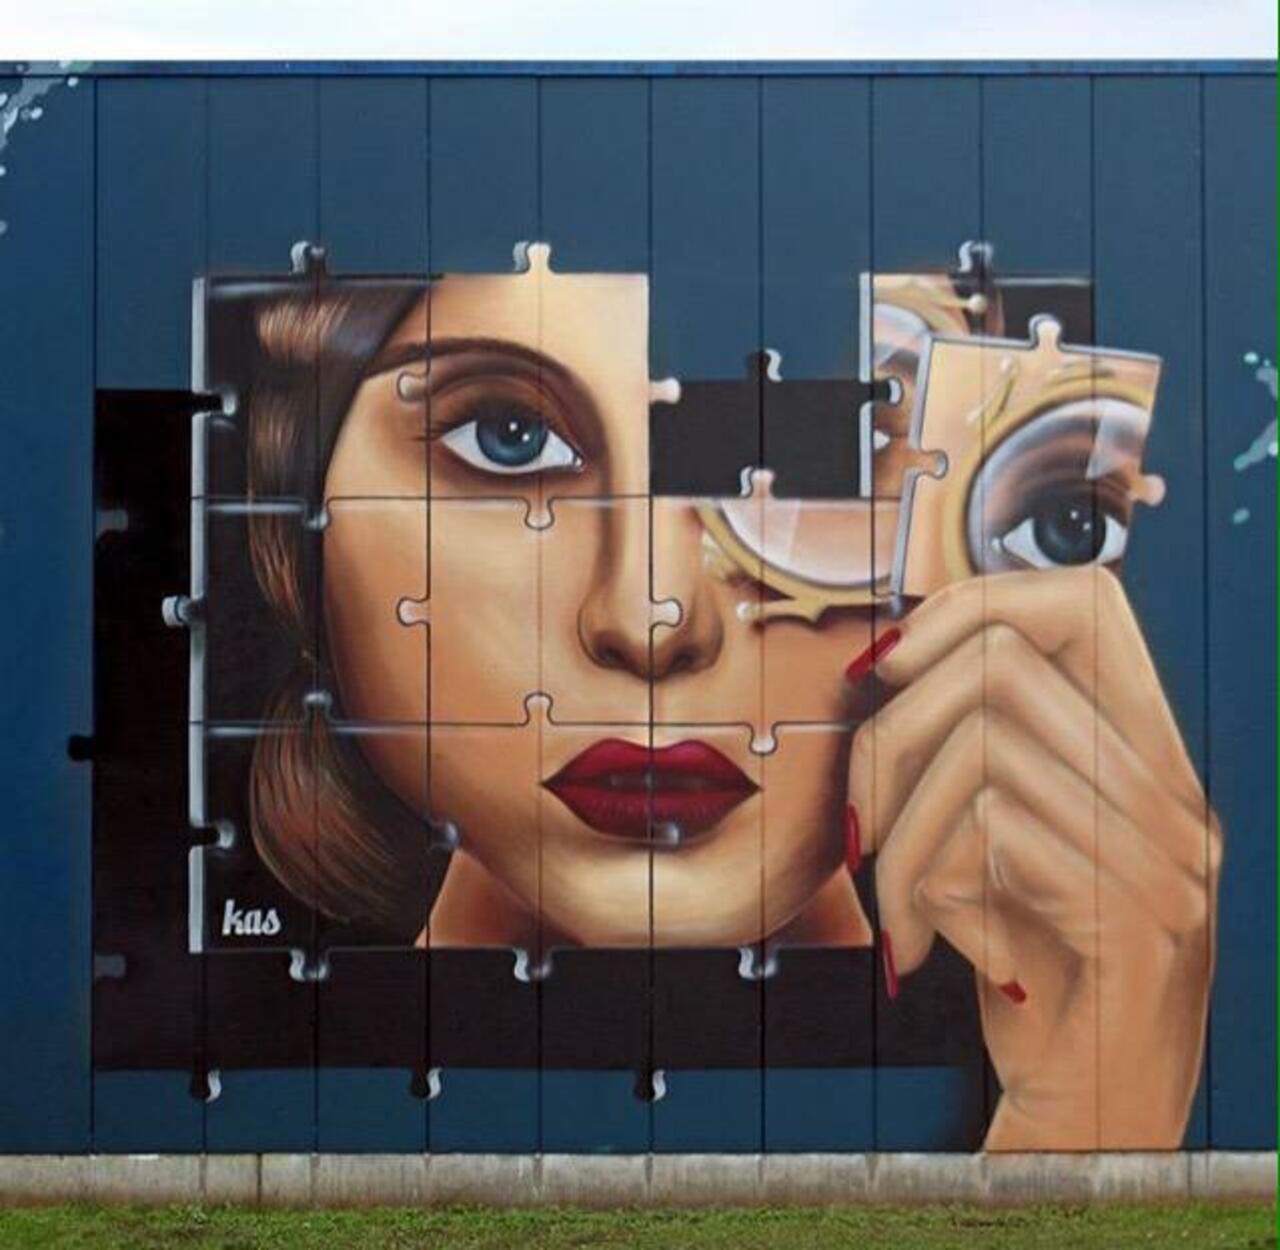 RT @GoogleStreetArt: Kas Art's new Street Art "Piece of me" in Aalst Belgium 

#art #graffiti #mural #streetart http://t.co/q4Mli5e4fC